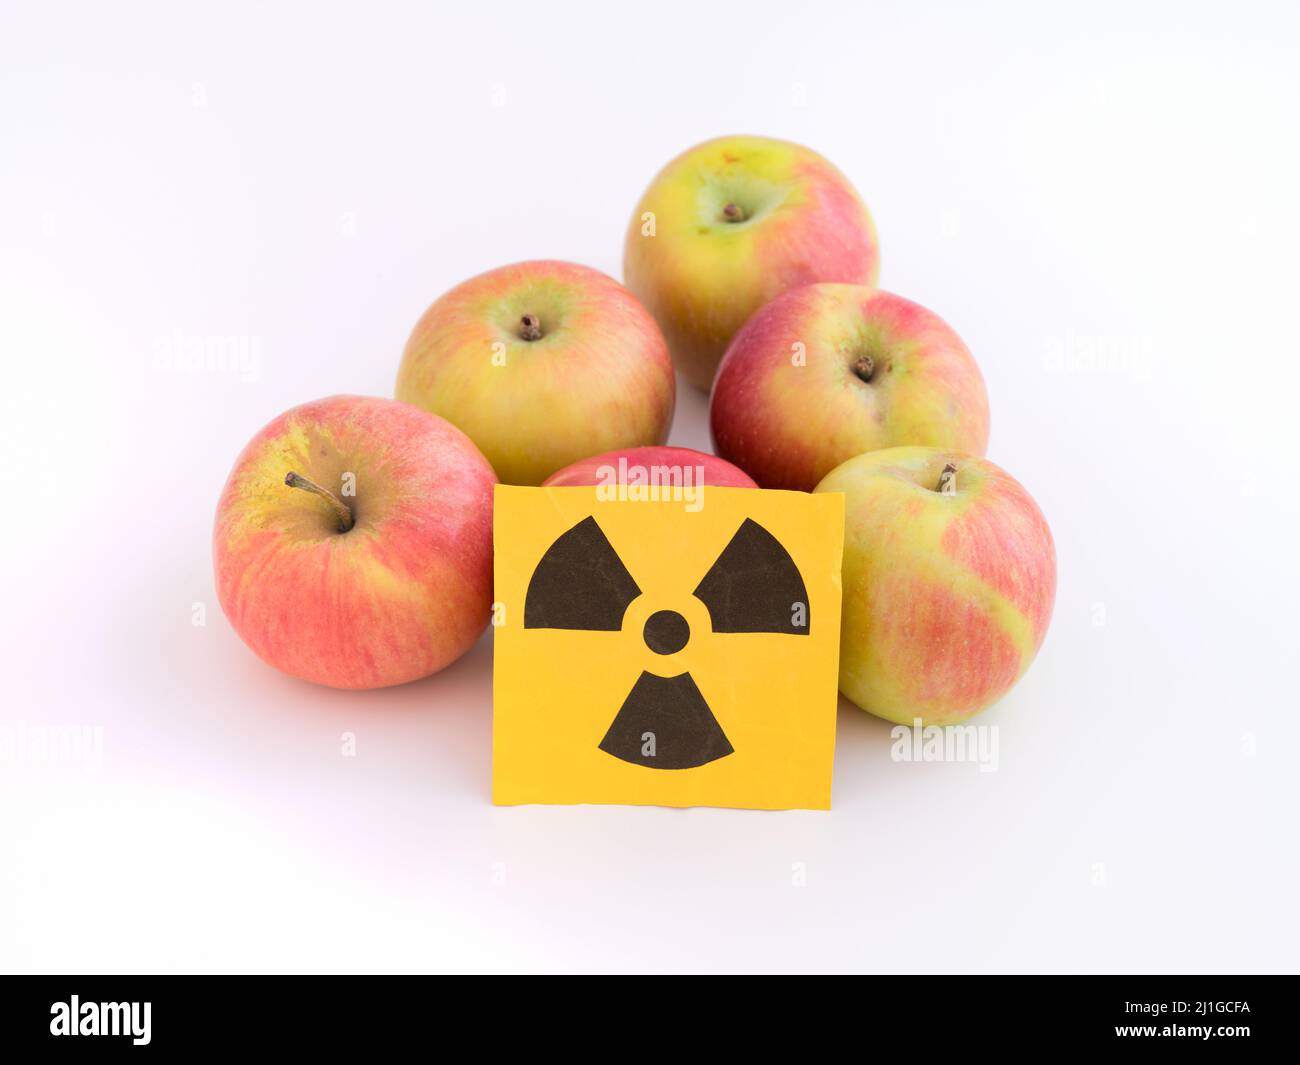 Äpfel mit einem Strahlungswarnschild auf ihnen. Nahaufnahme. Stockfoto